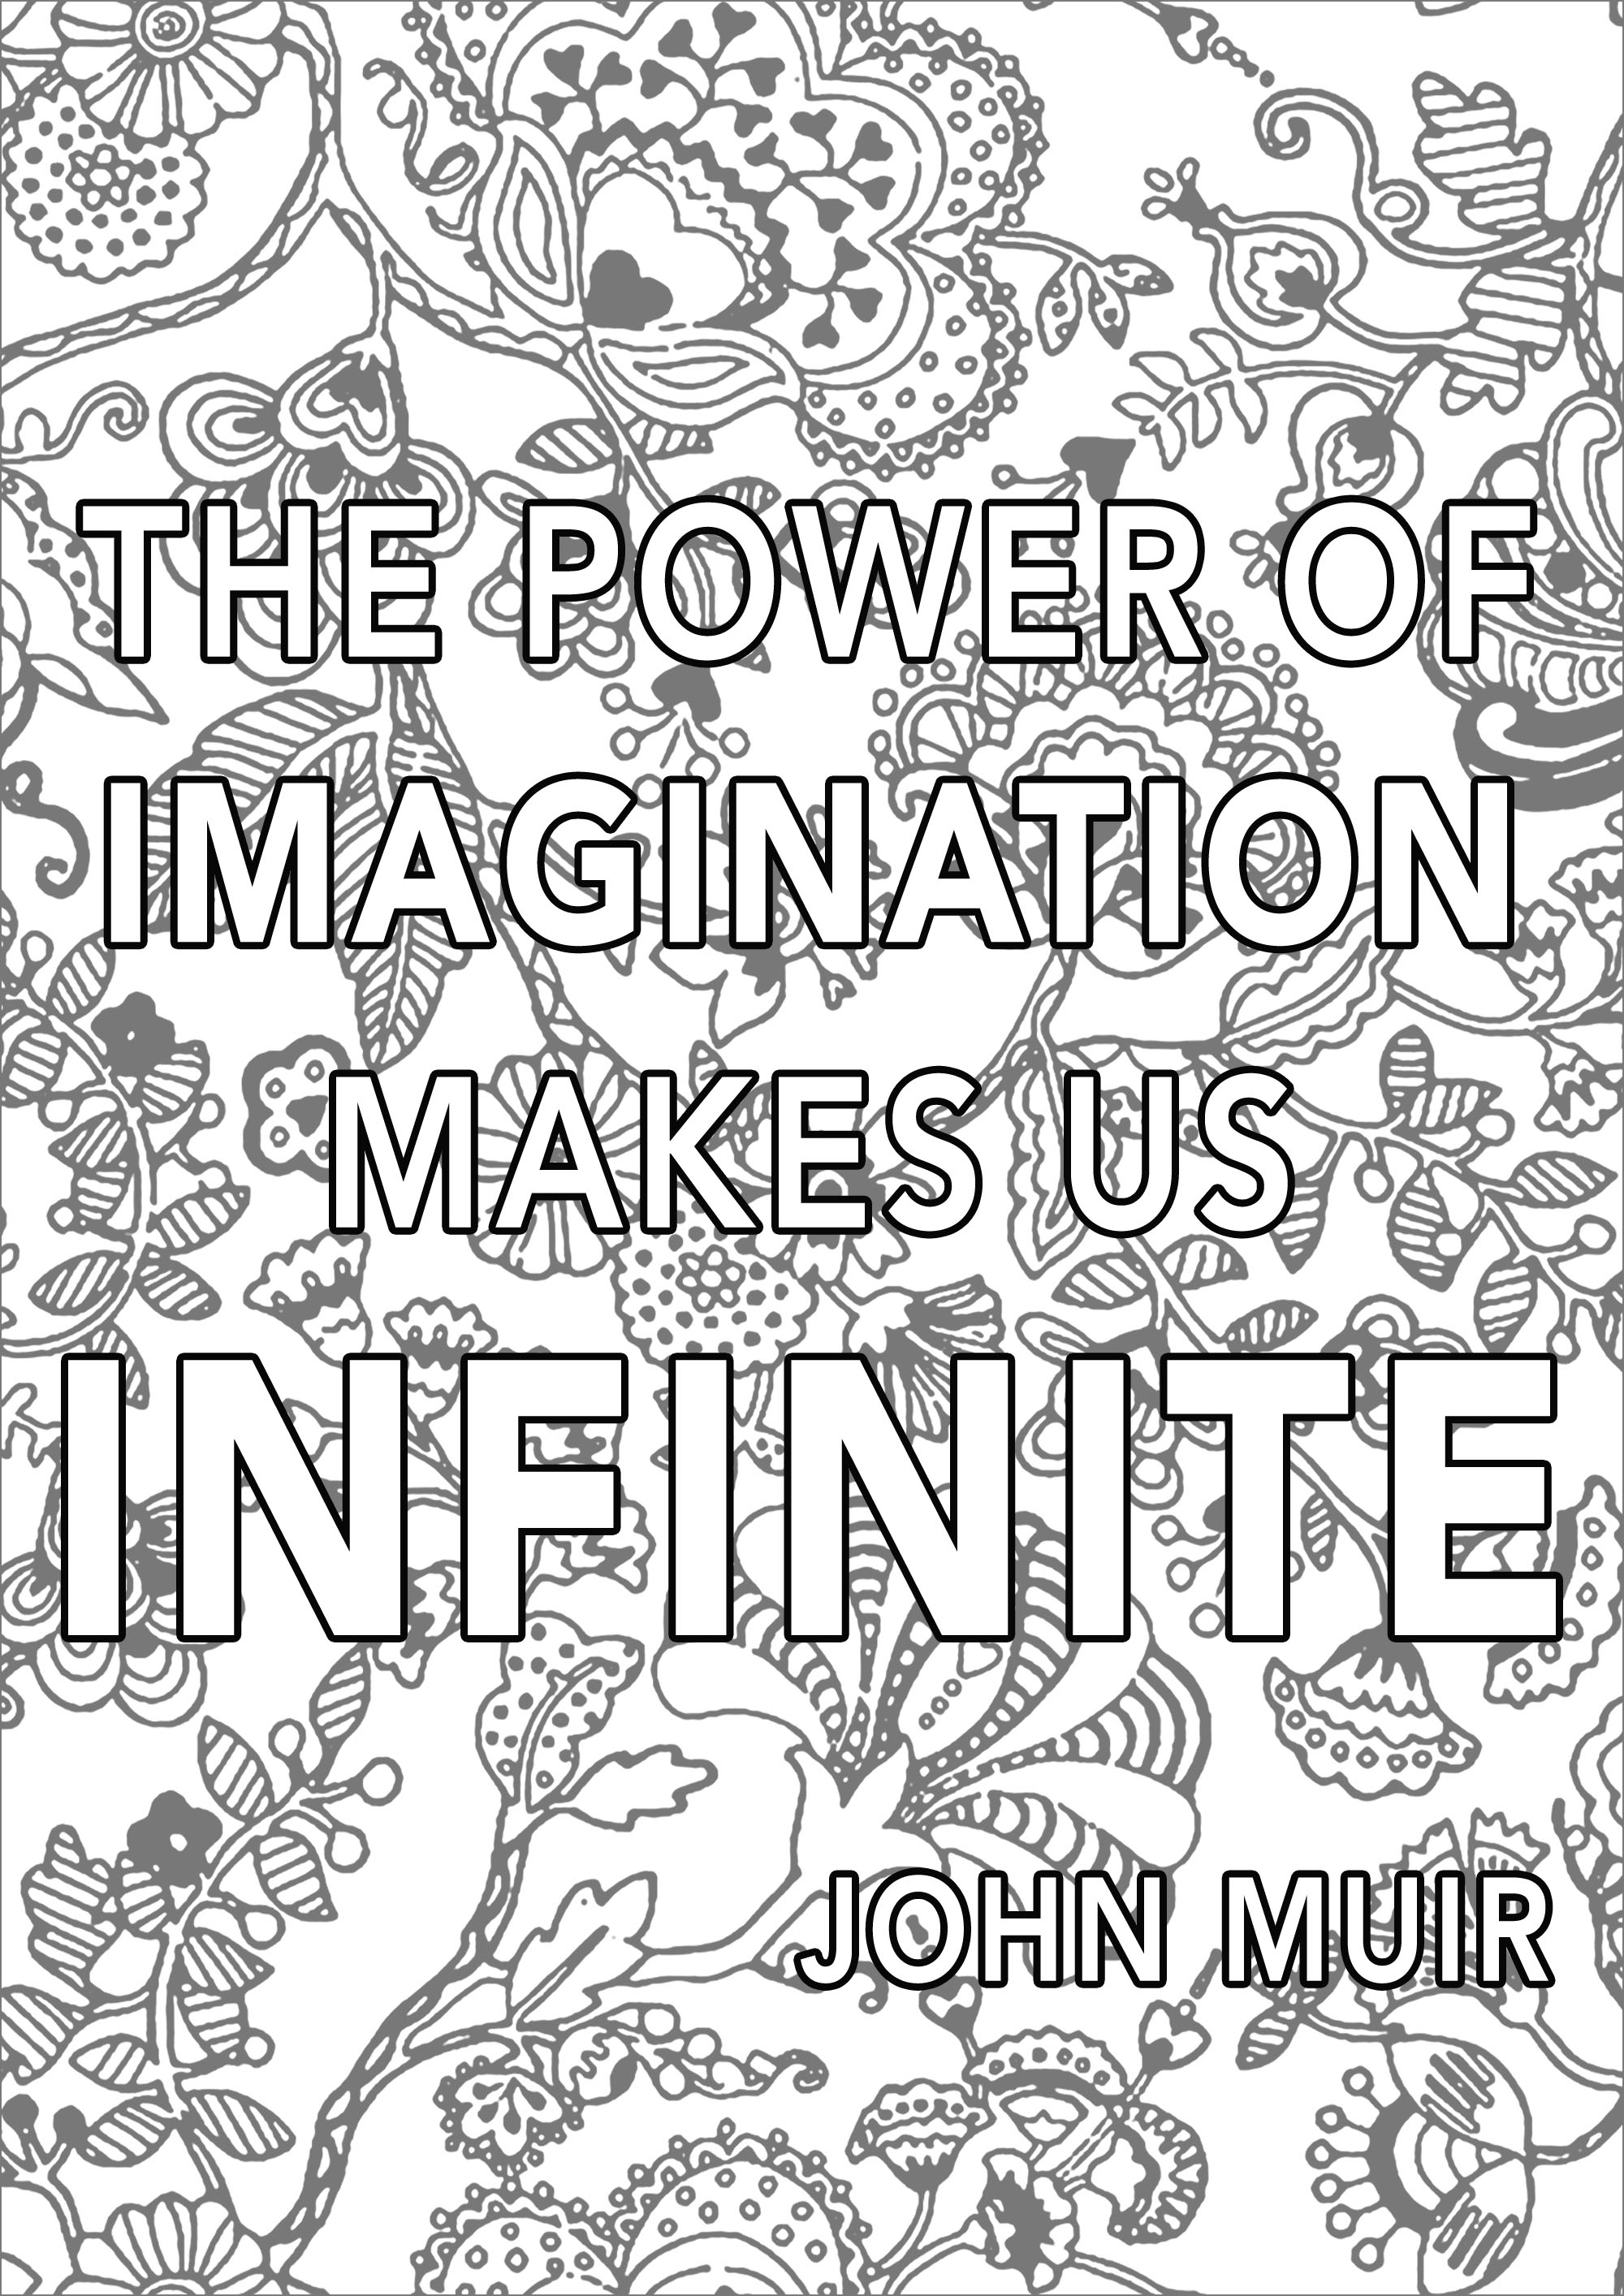 Il potere dell'immaginazione ci rende infiniti, John Muir